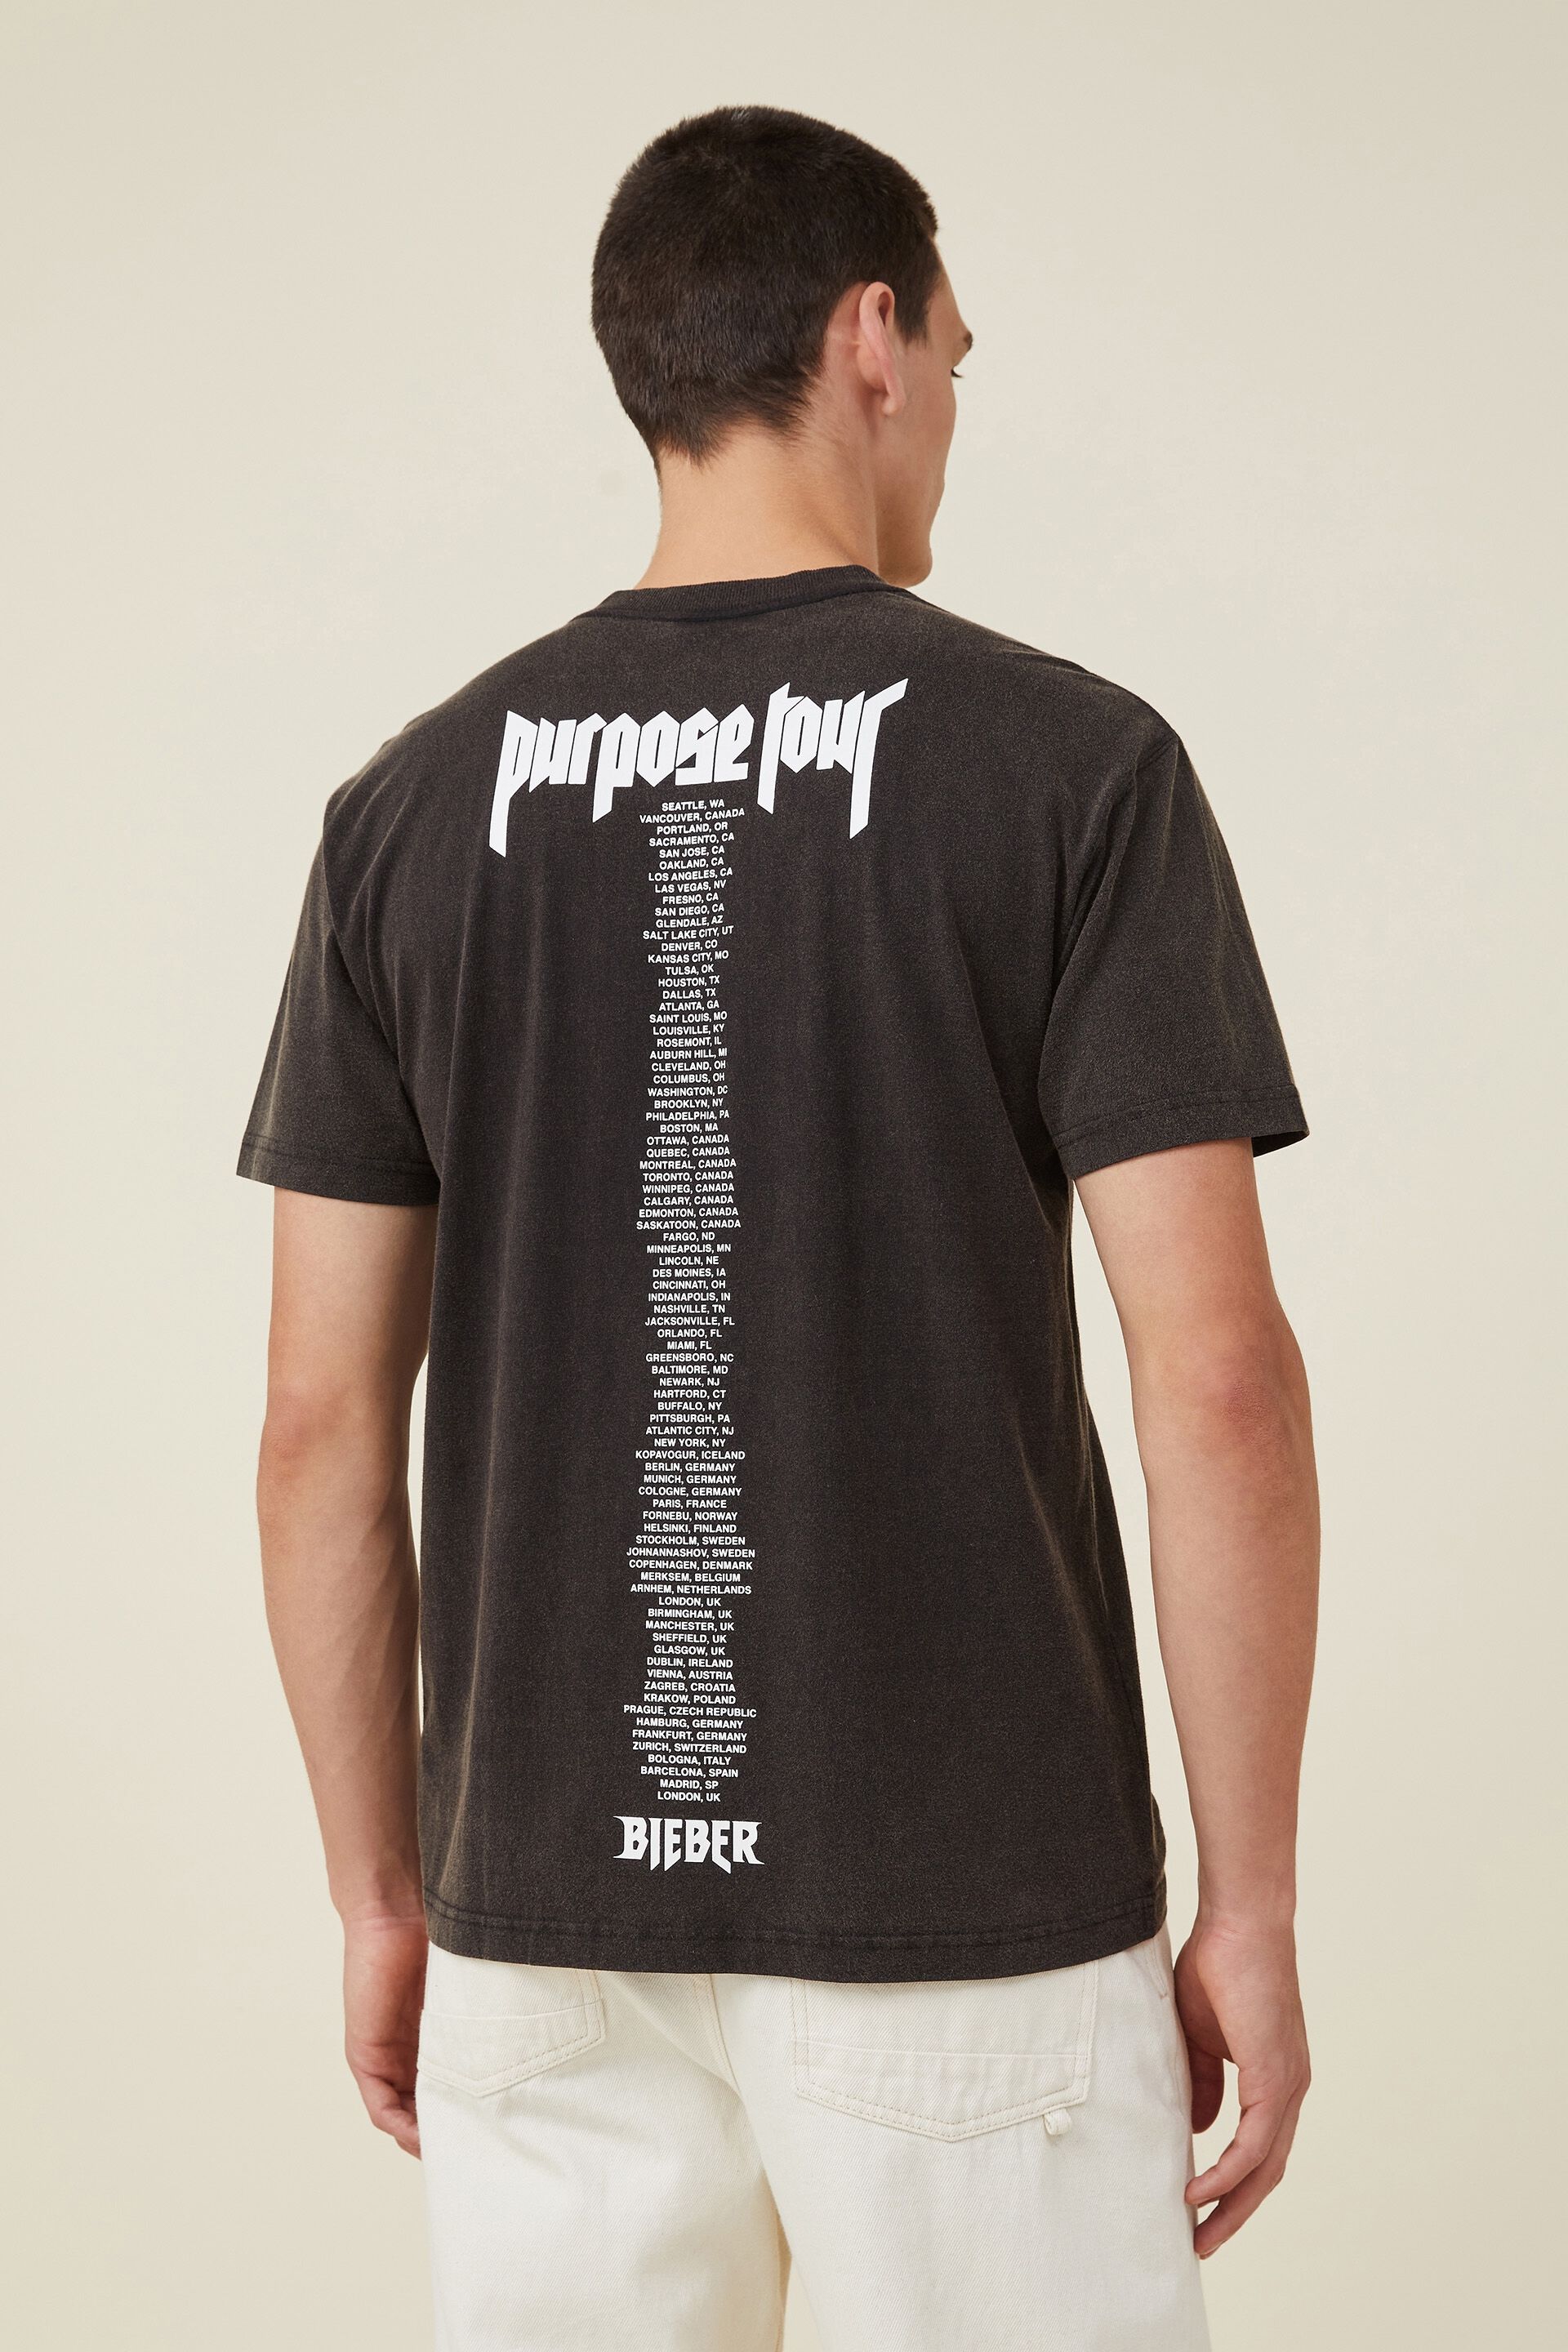 Justin Bieber Purpose Stadium Tour Tシャツ - Tシャツ